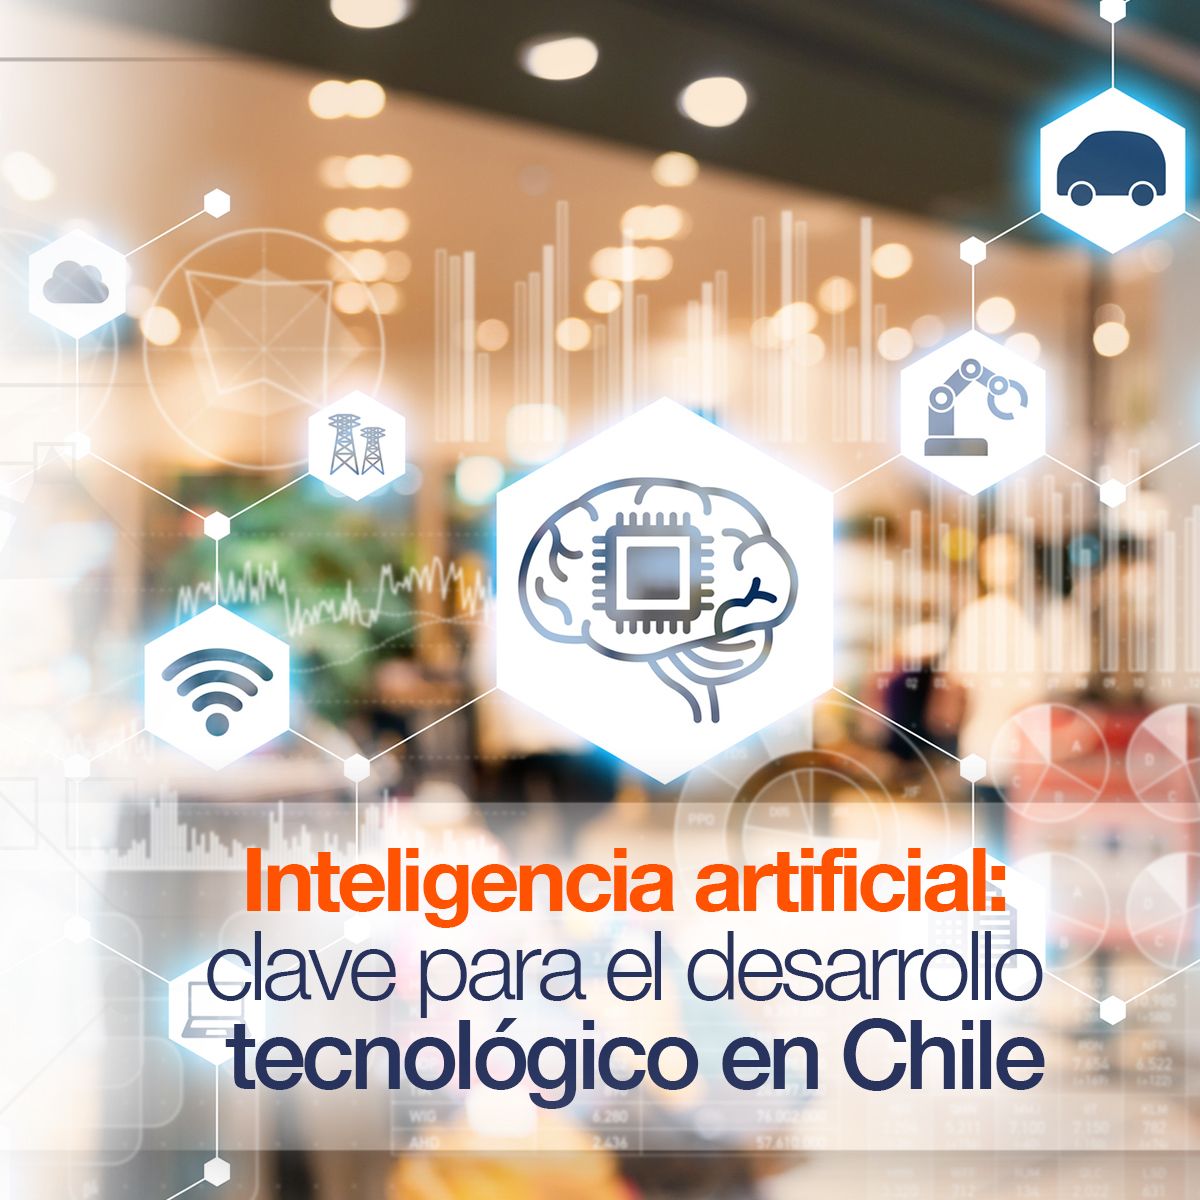 Inteligencia artificial: clave para el desarrollo tecnológico en Chile